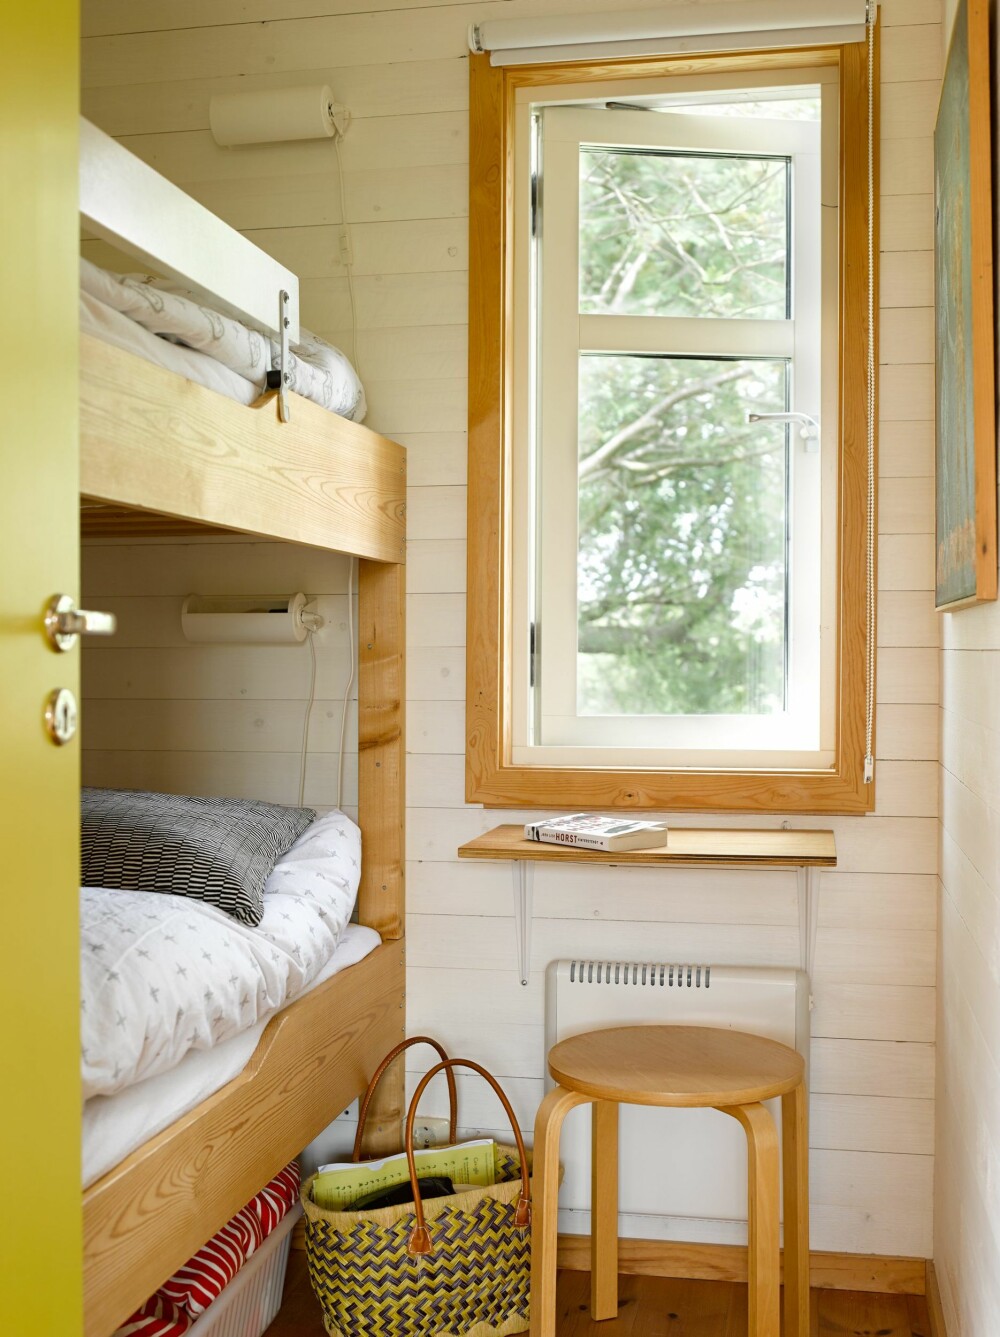 SOVEROM: Det vesle soverommet har køyeseng, og det samme lette uttrykket som på interiøret i resten av hytta. 